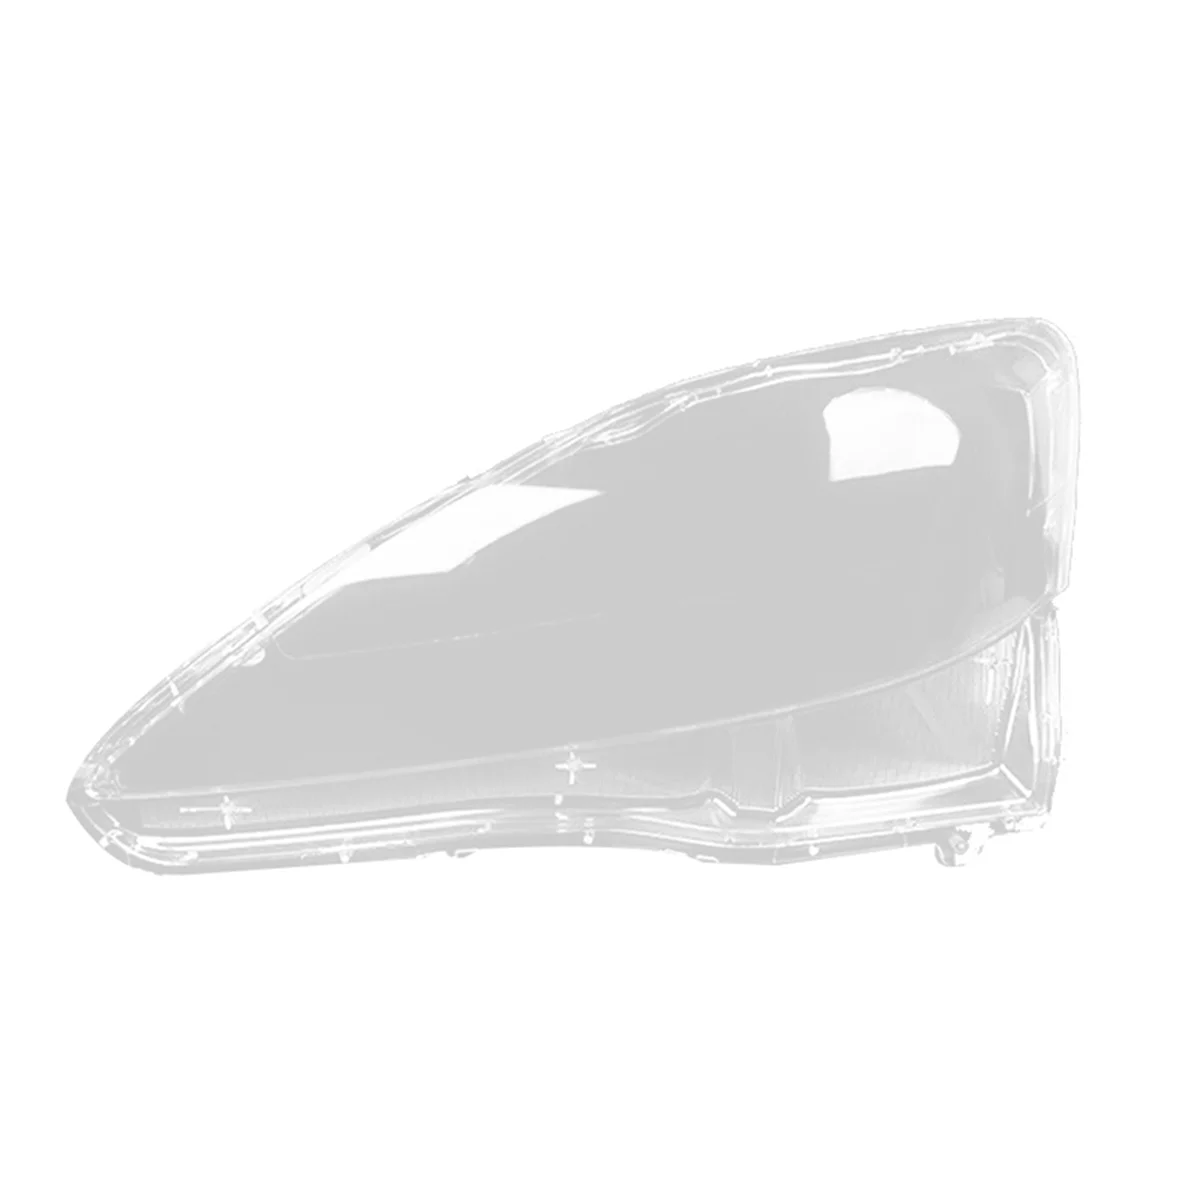 

Передняя крышка для правой автомобильной фары, оболочка для передней фары, оболочка для лампы, абажур для объектива для Lexus IS250 IS300 IS350 2006-2012